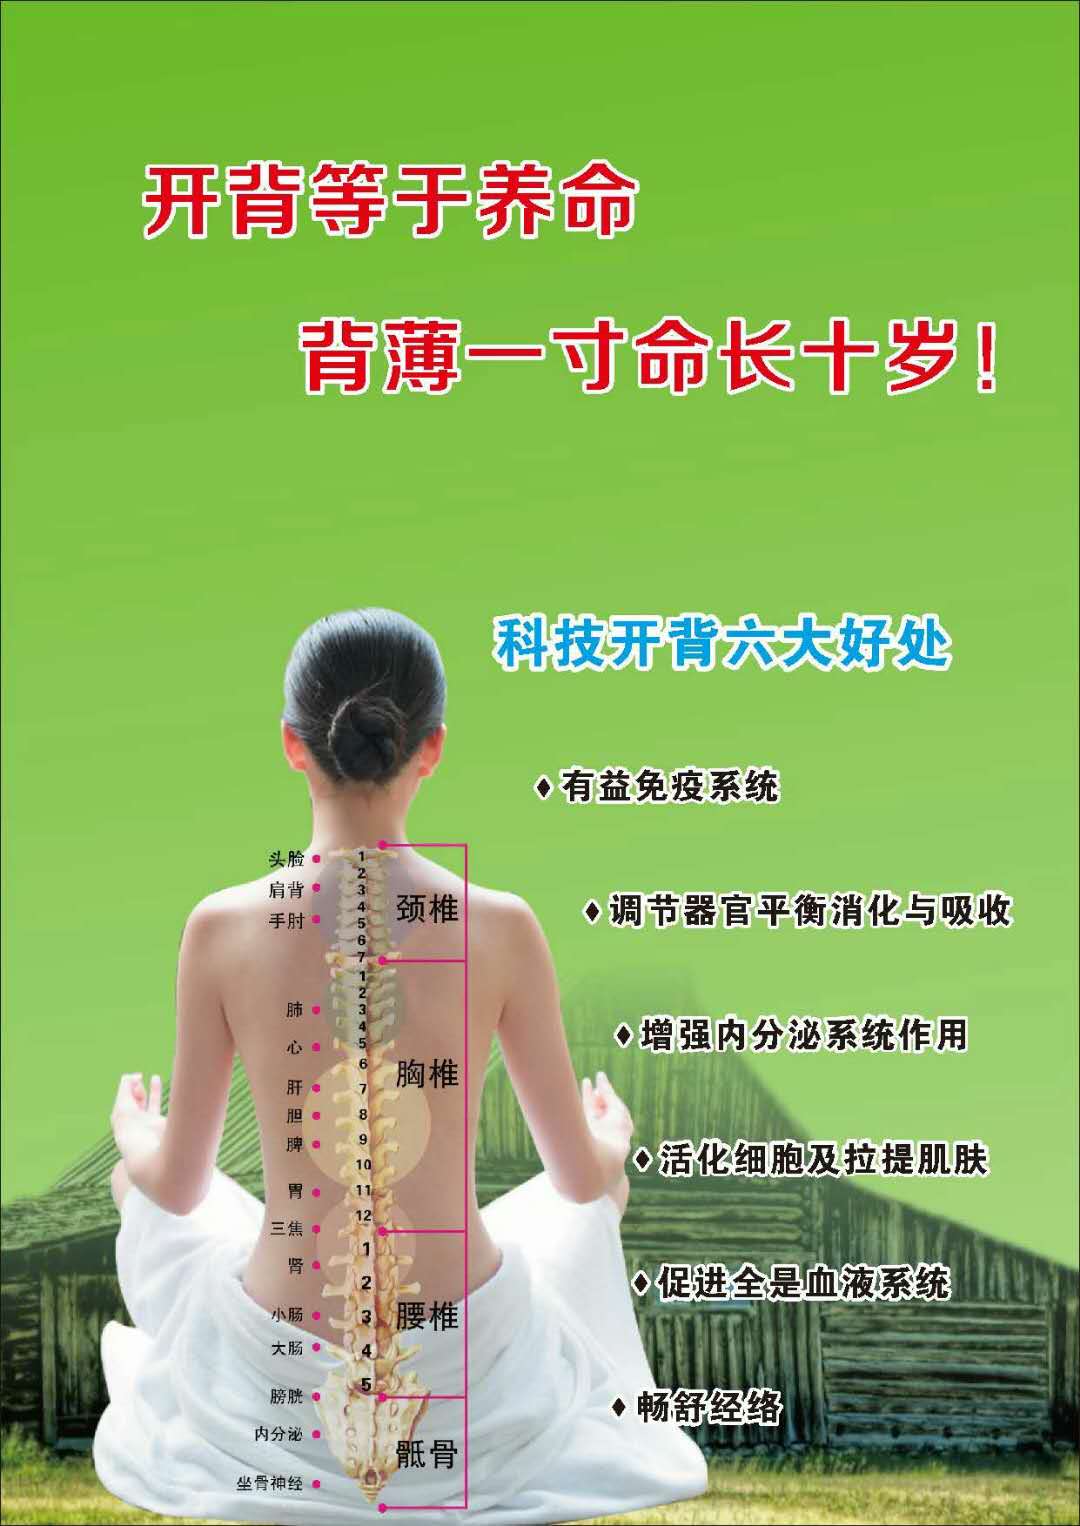 东莞中医理疗培训分享日常理疗资讯